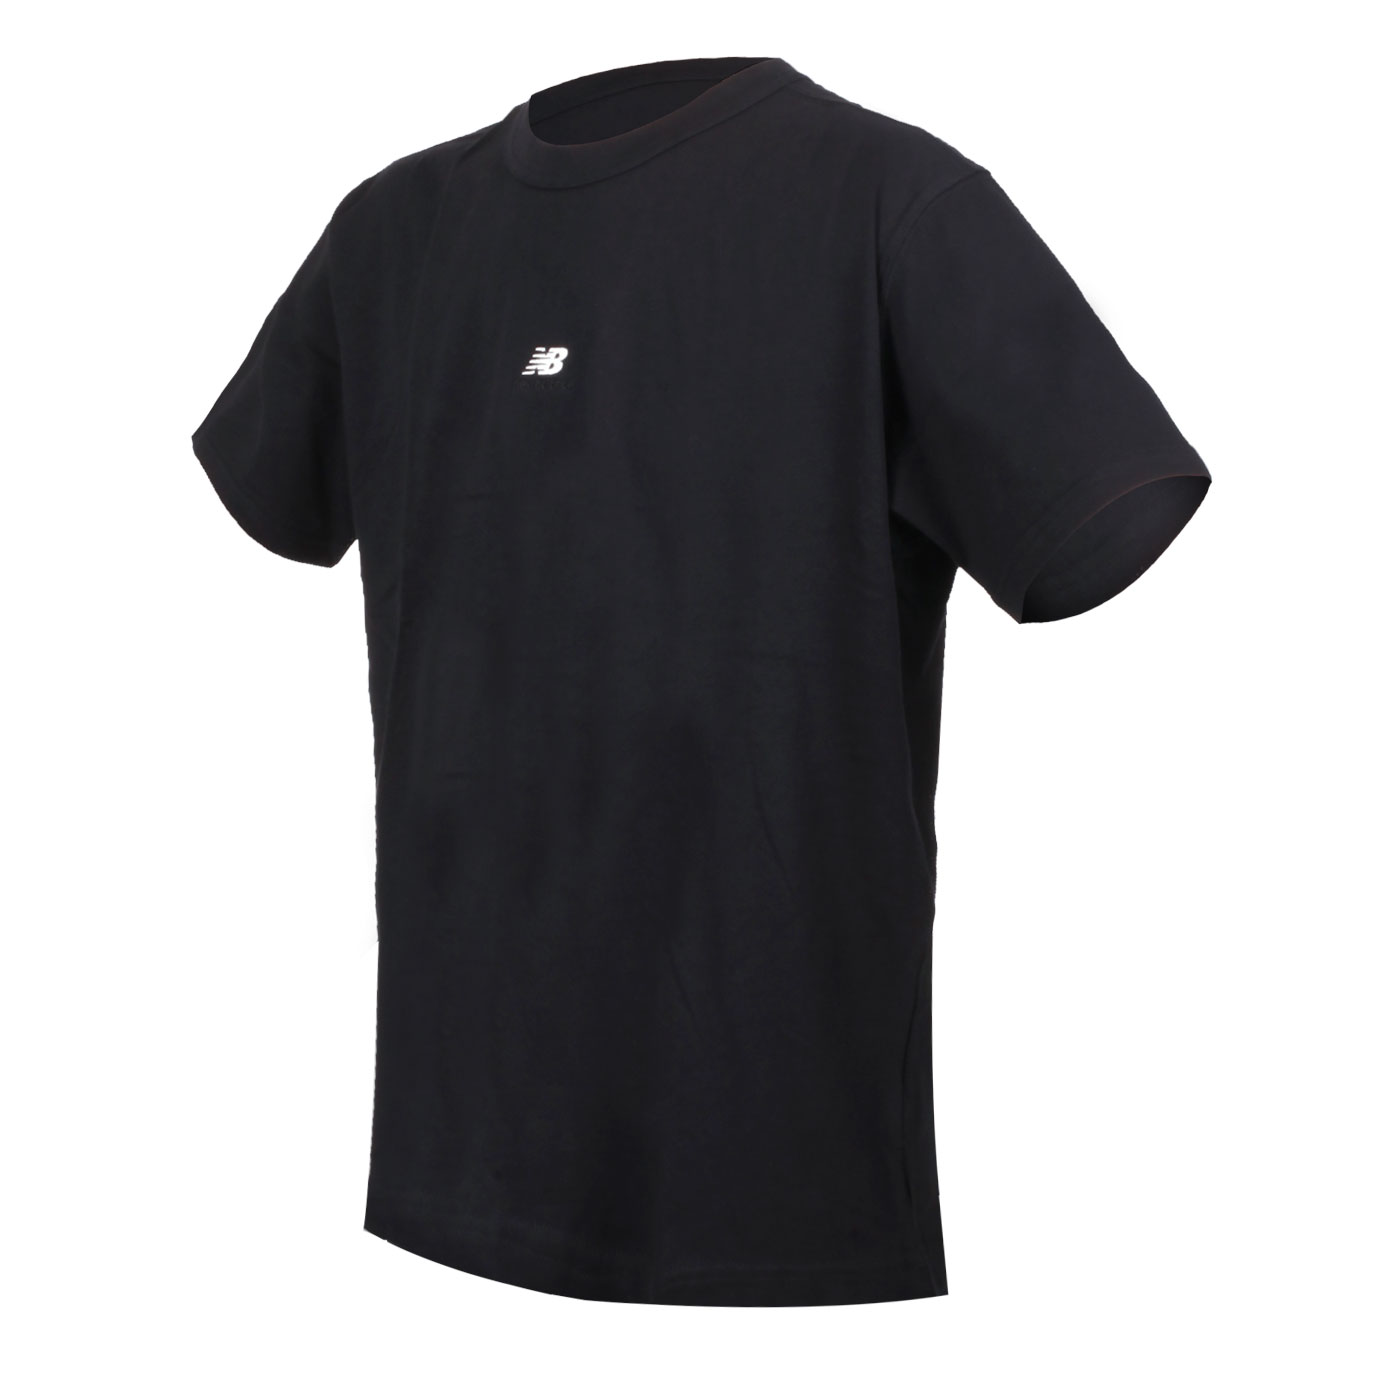 NEW BALANCE 男款短袖T恤  MT31504BK - 黑白